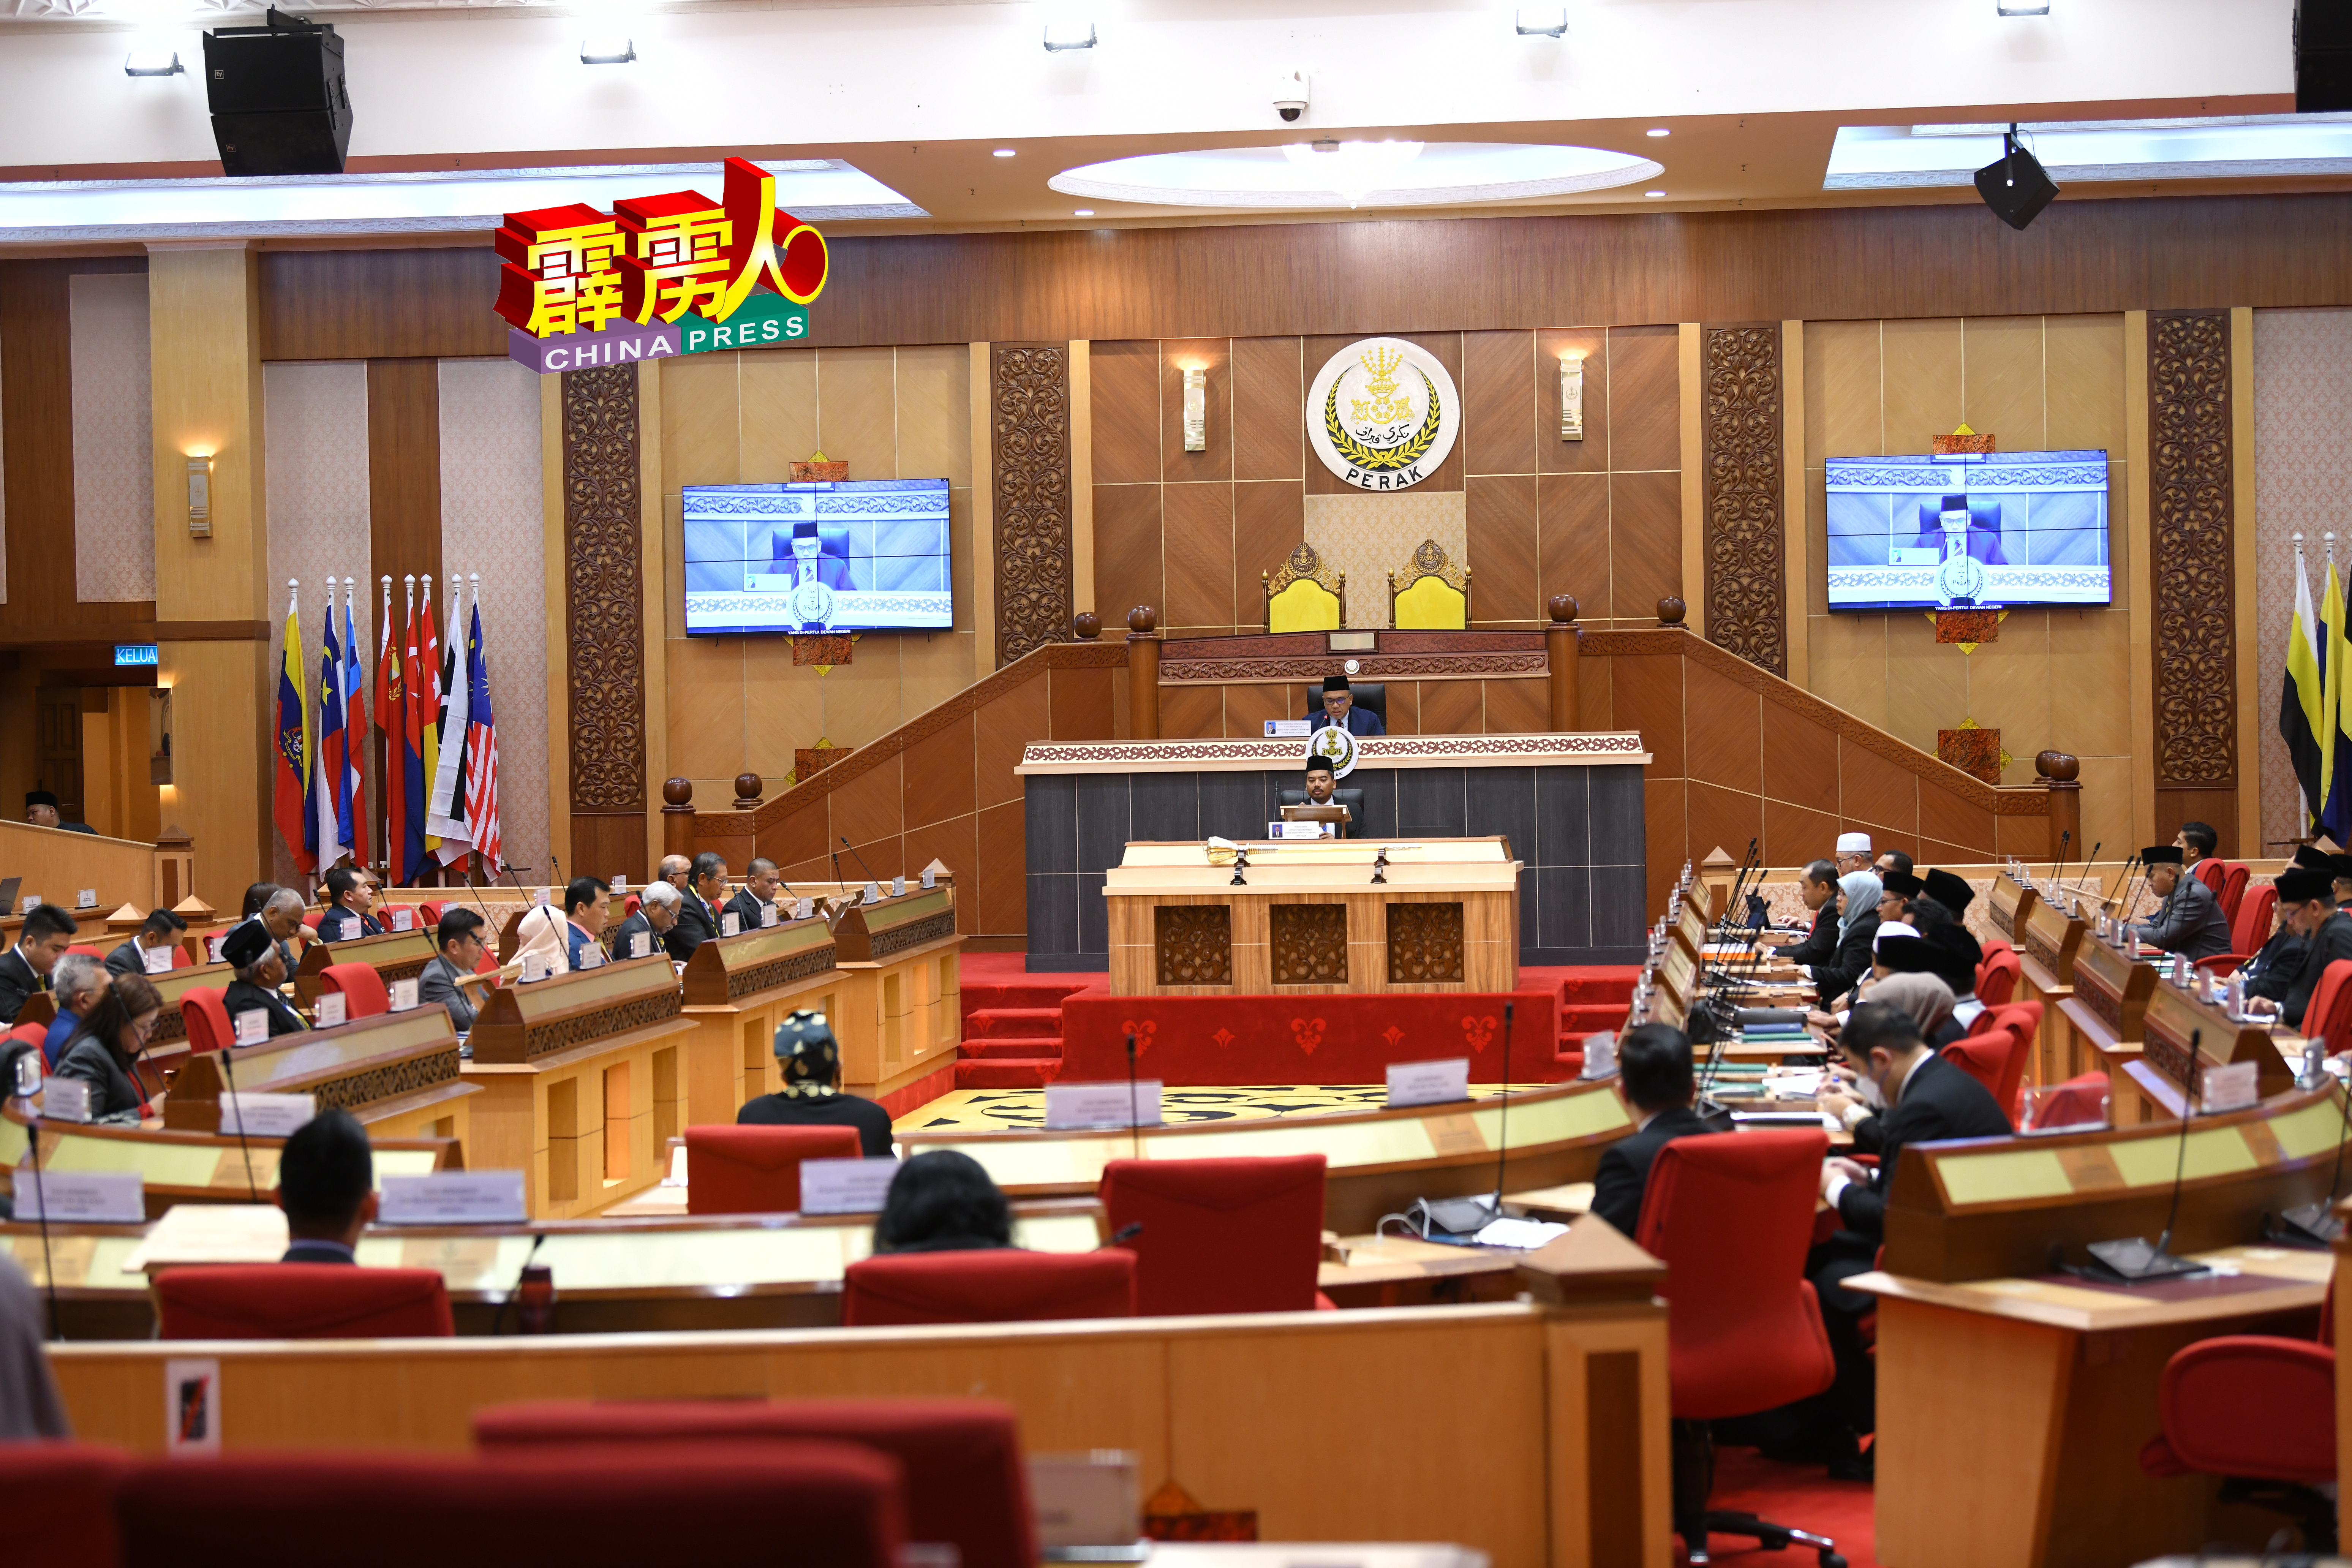 霹雳州议会第15届第1季第2次会议周三復会，会议过程顺利。